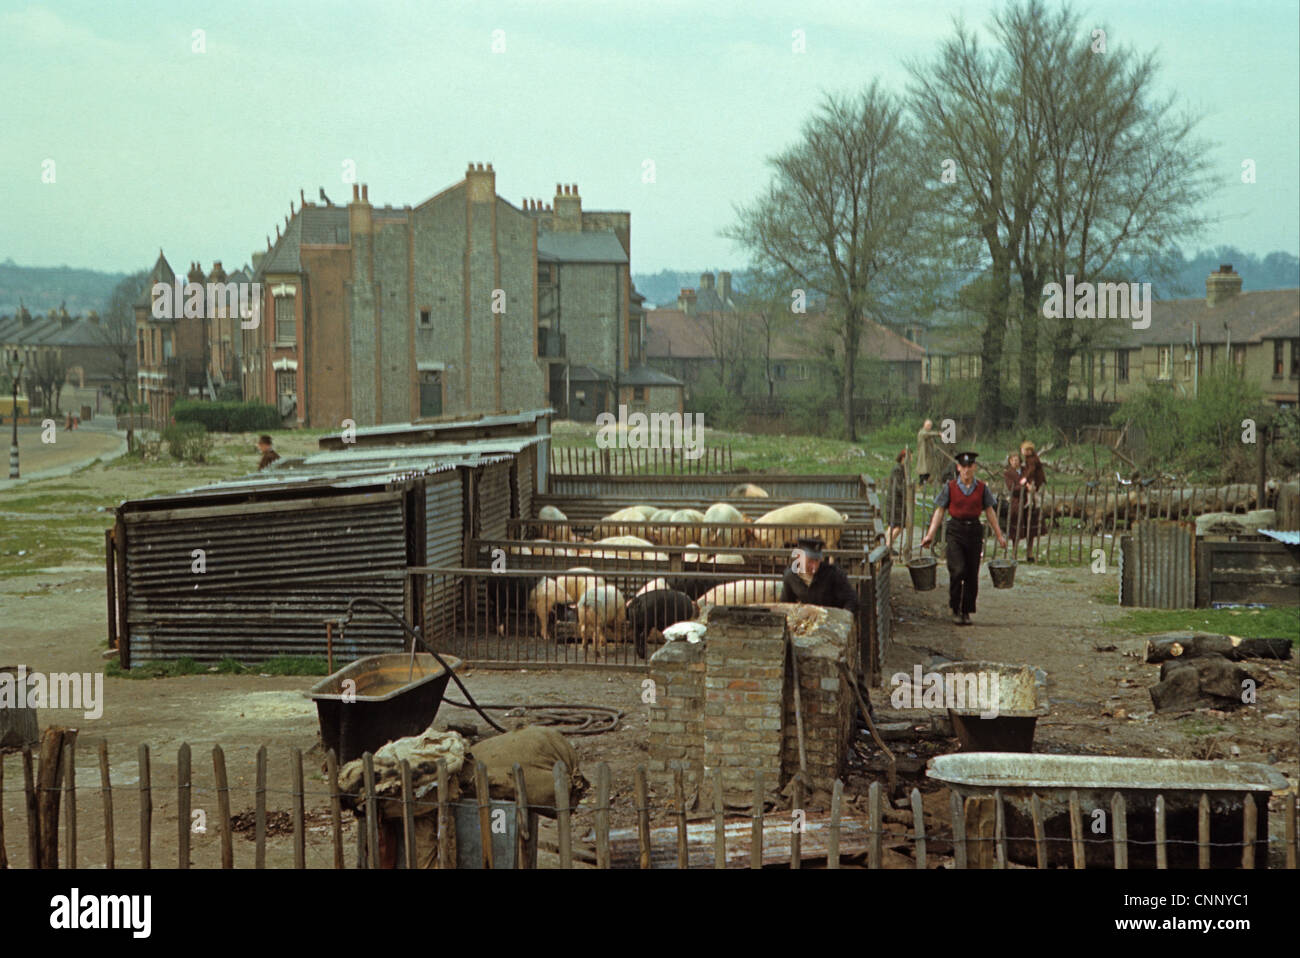 Schweinehaltung, Großbritannien während des Krieges, Aufzucht von Schweinen in bombardierten Bereich, Nord-London, England, April l944 Stockfoto